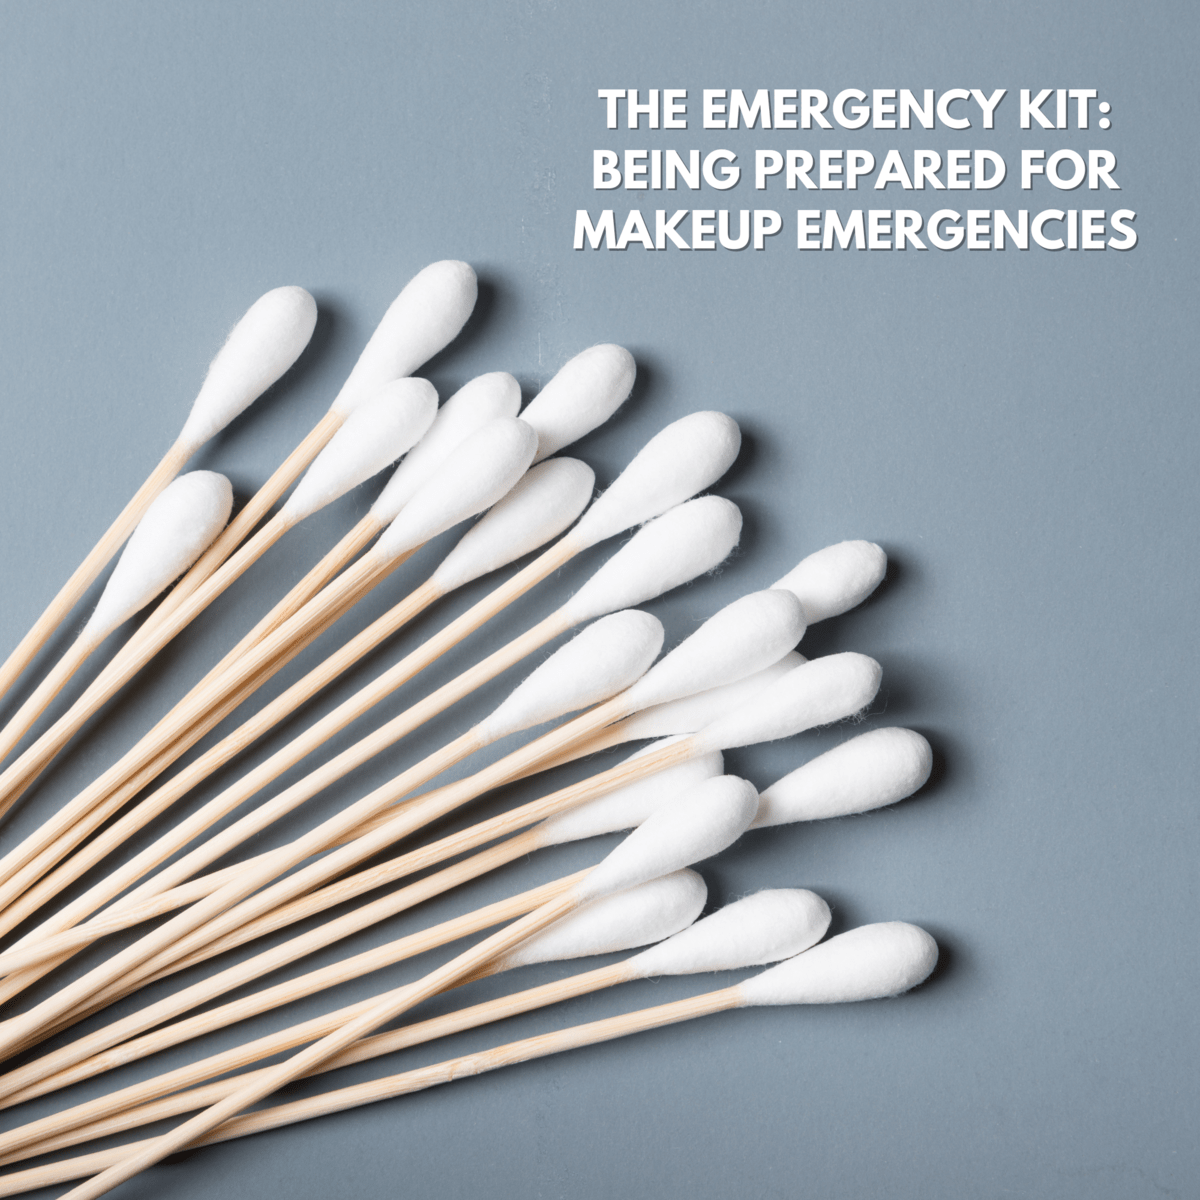 The Emergency Kit: Being Prepared for Makeup Emergencies